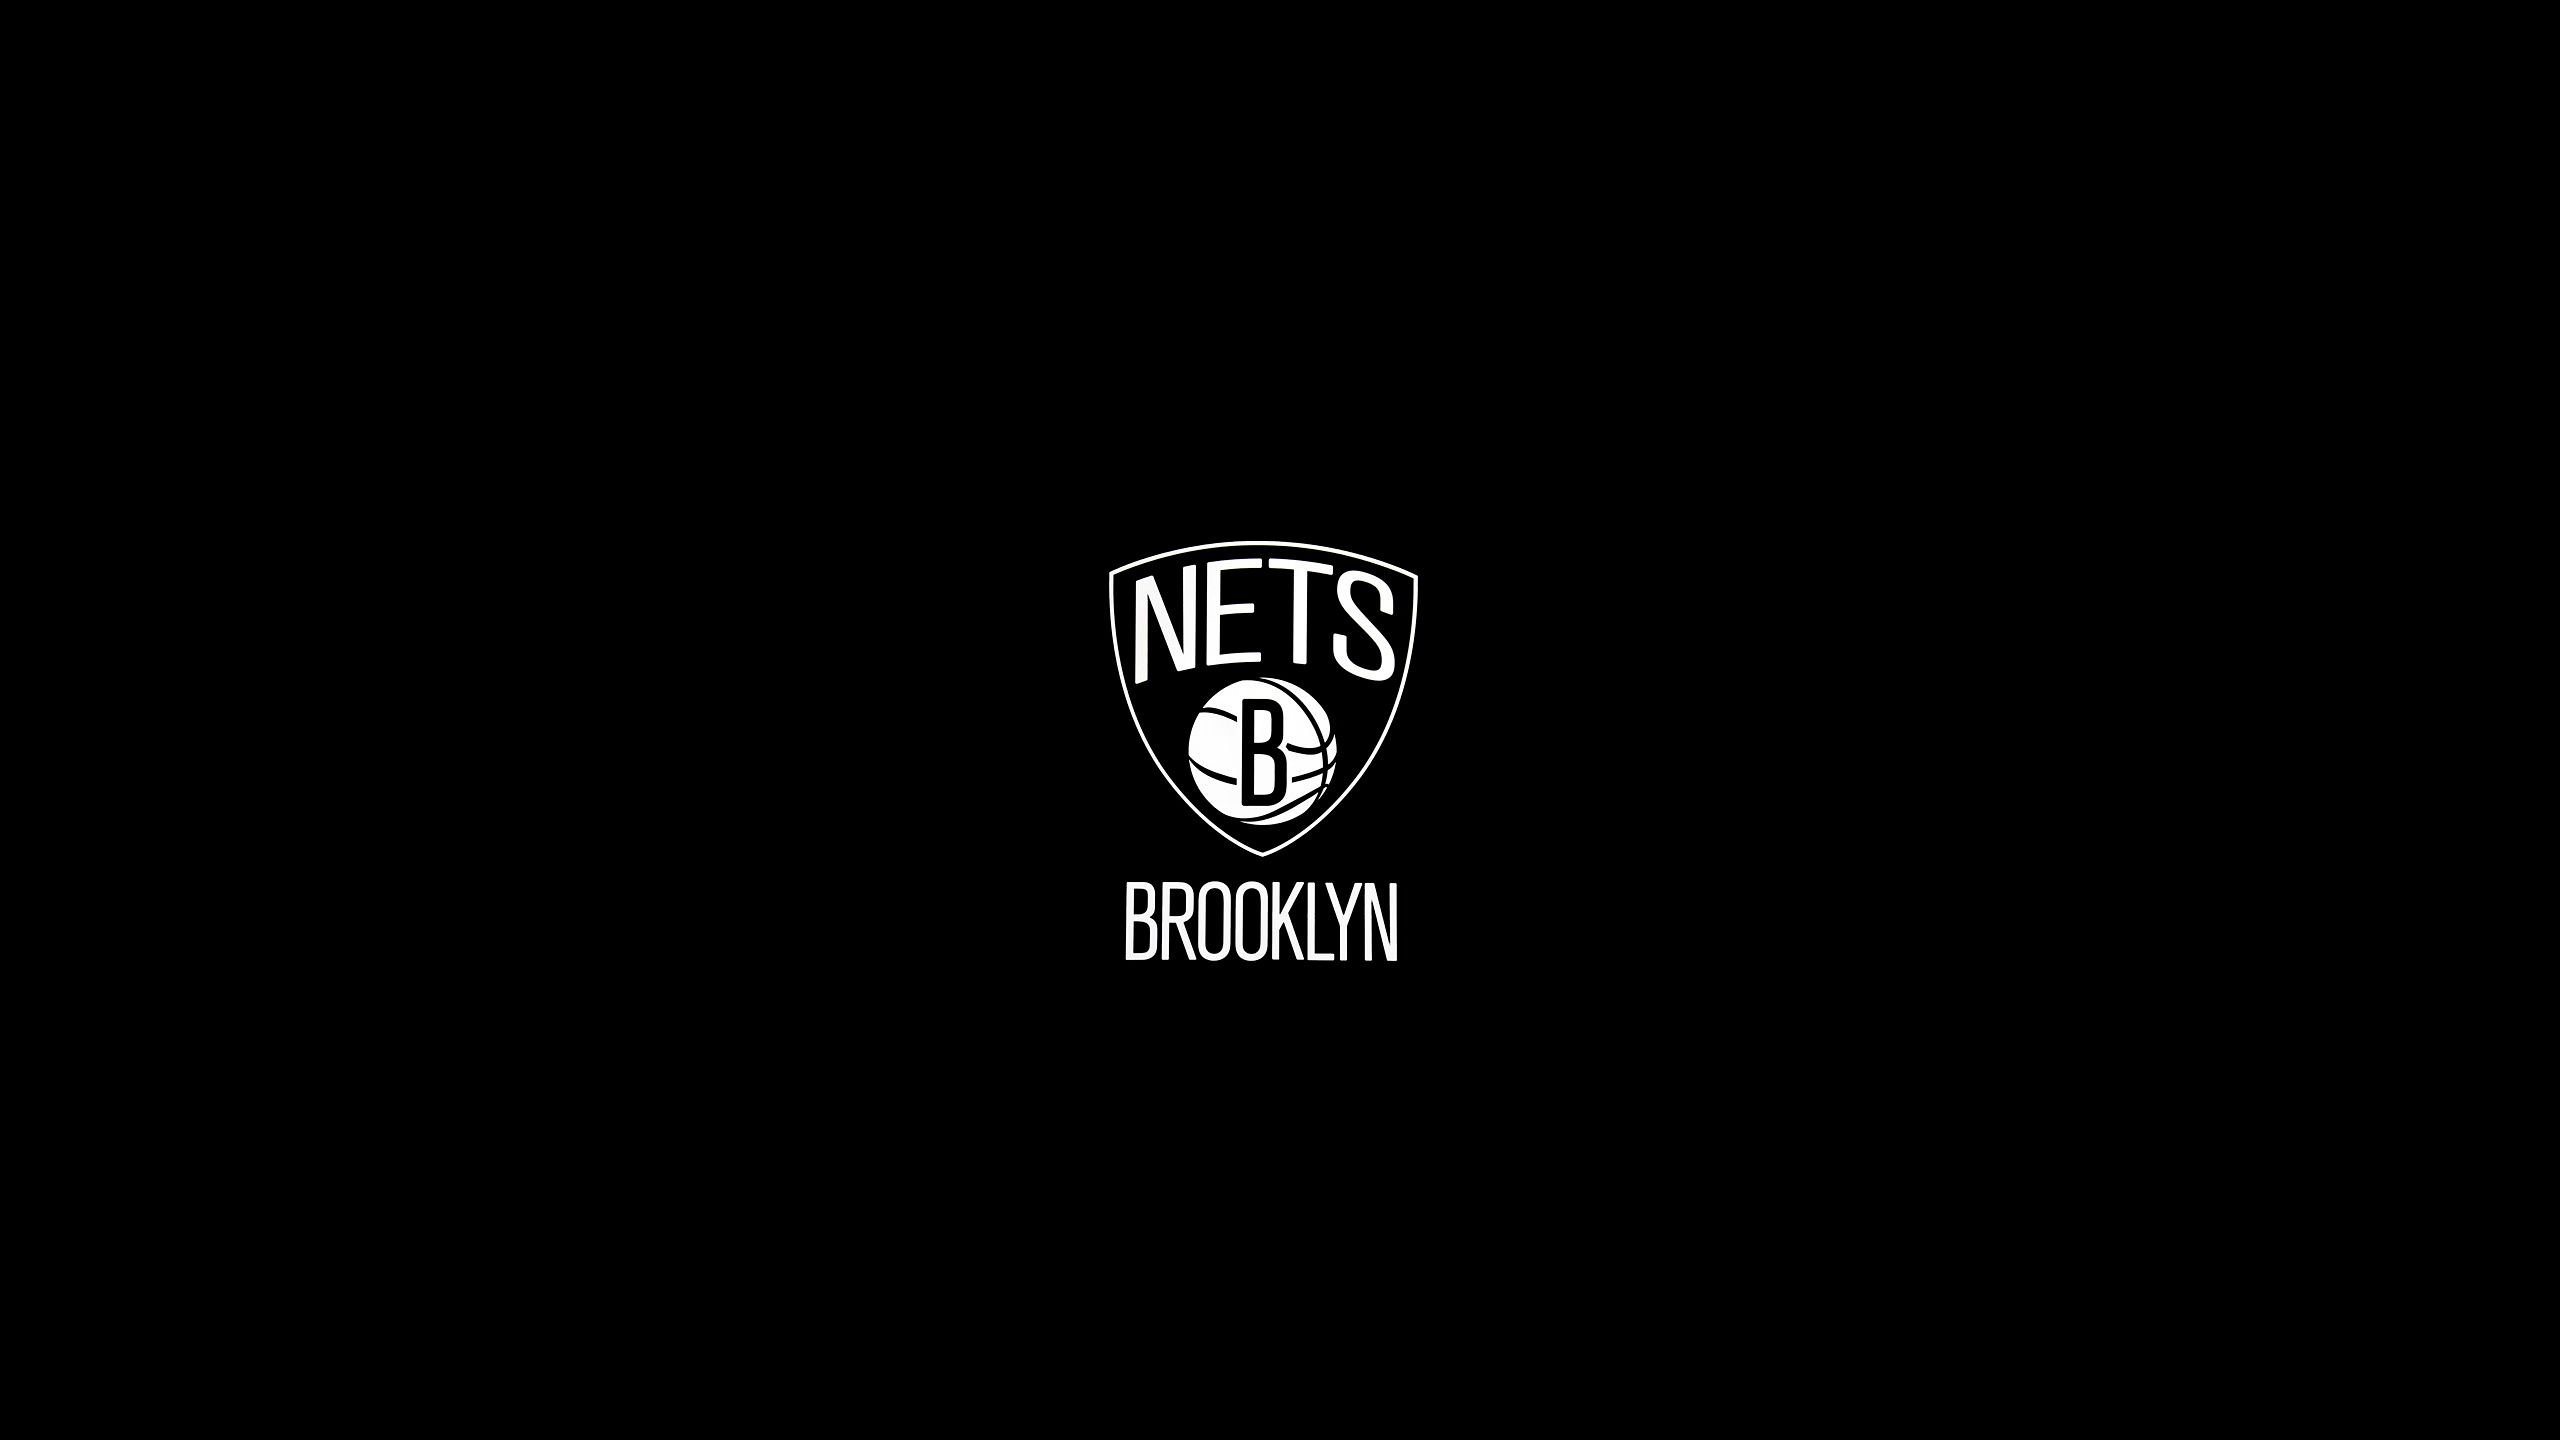 Brooklyn Nets wallpaper 2560x1440 79981